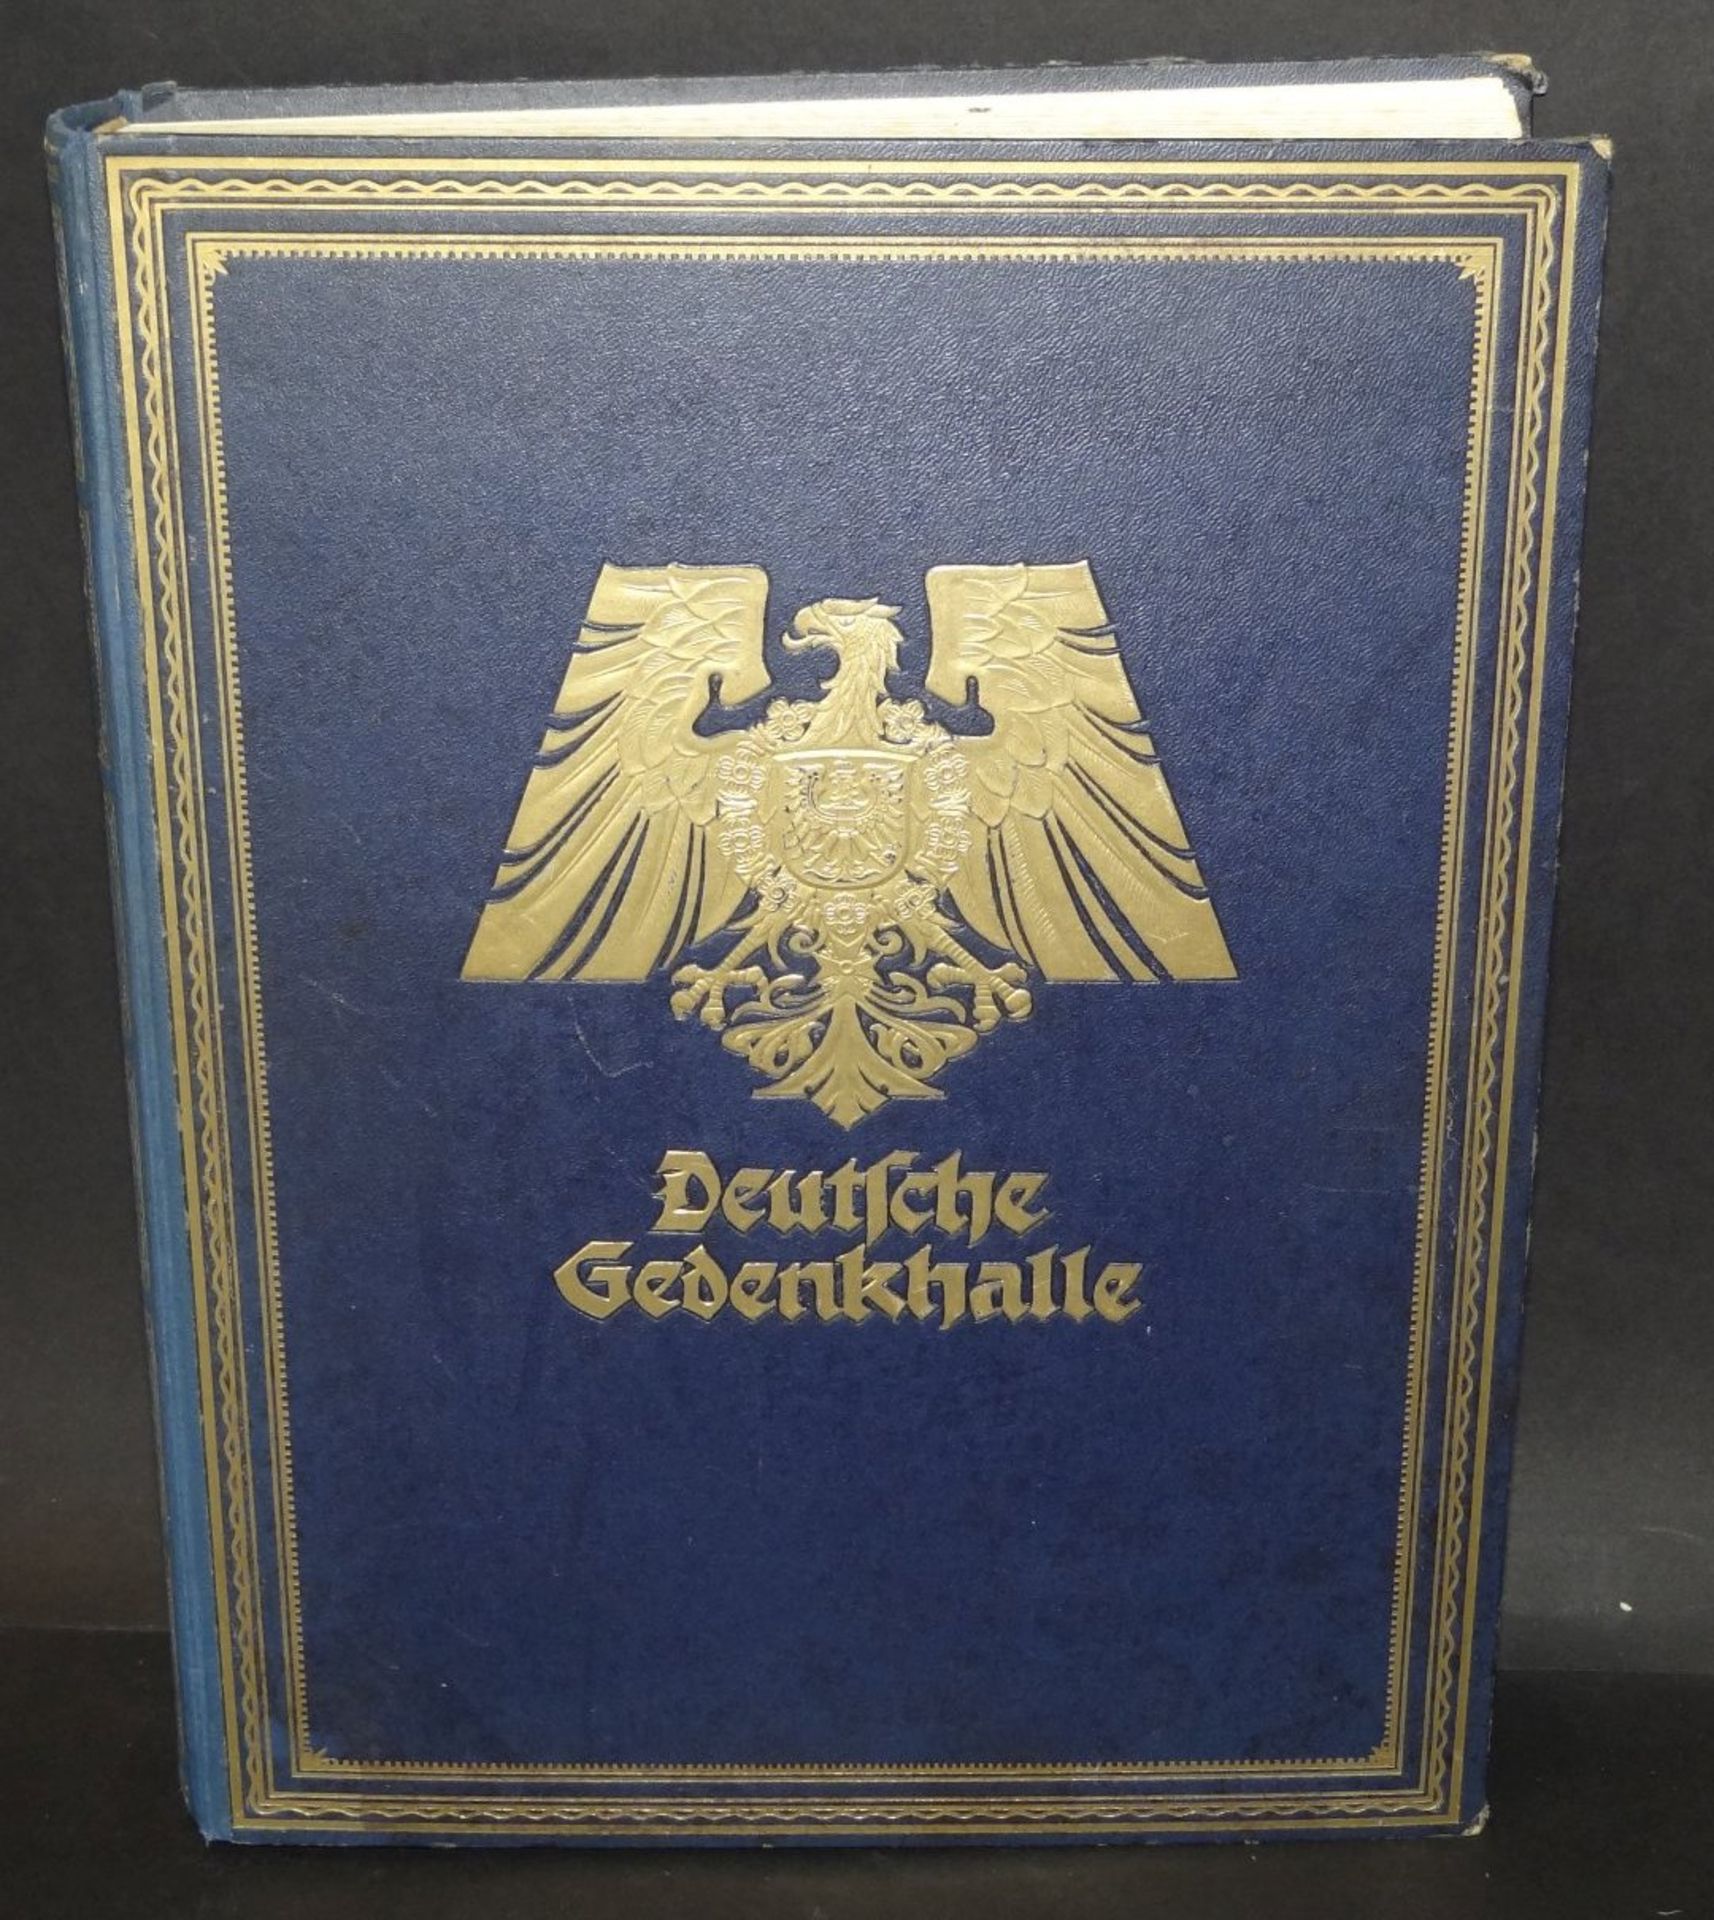 "Deutsche Gedenkhalle" Gross-Prachtband 1925 stockfleckig, ansonsten gut, 36x28 cm